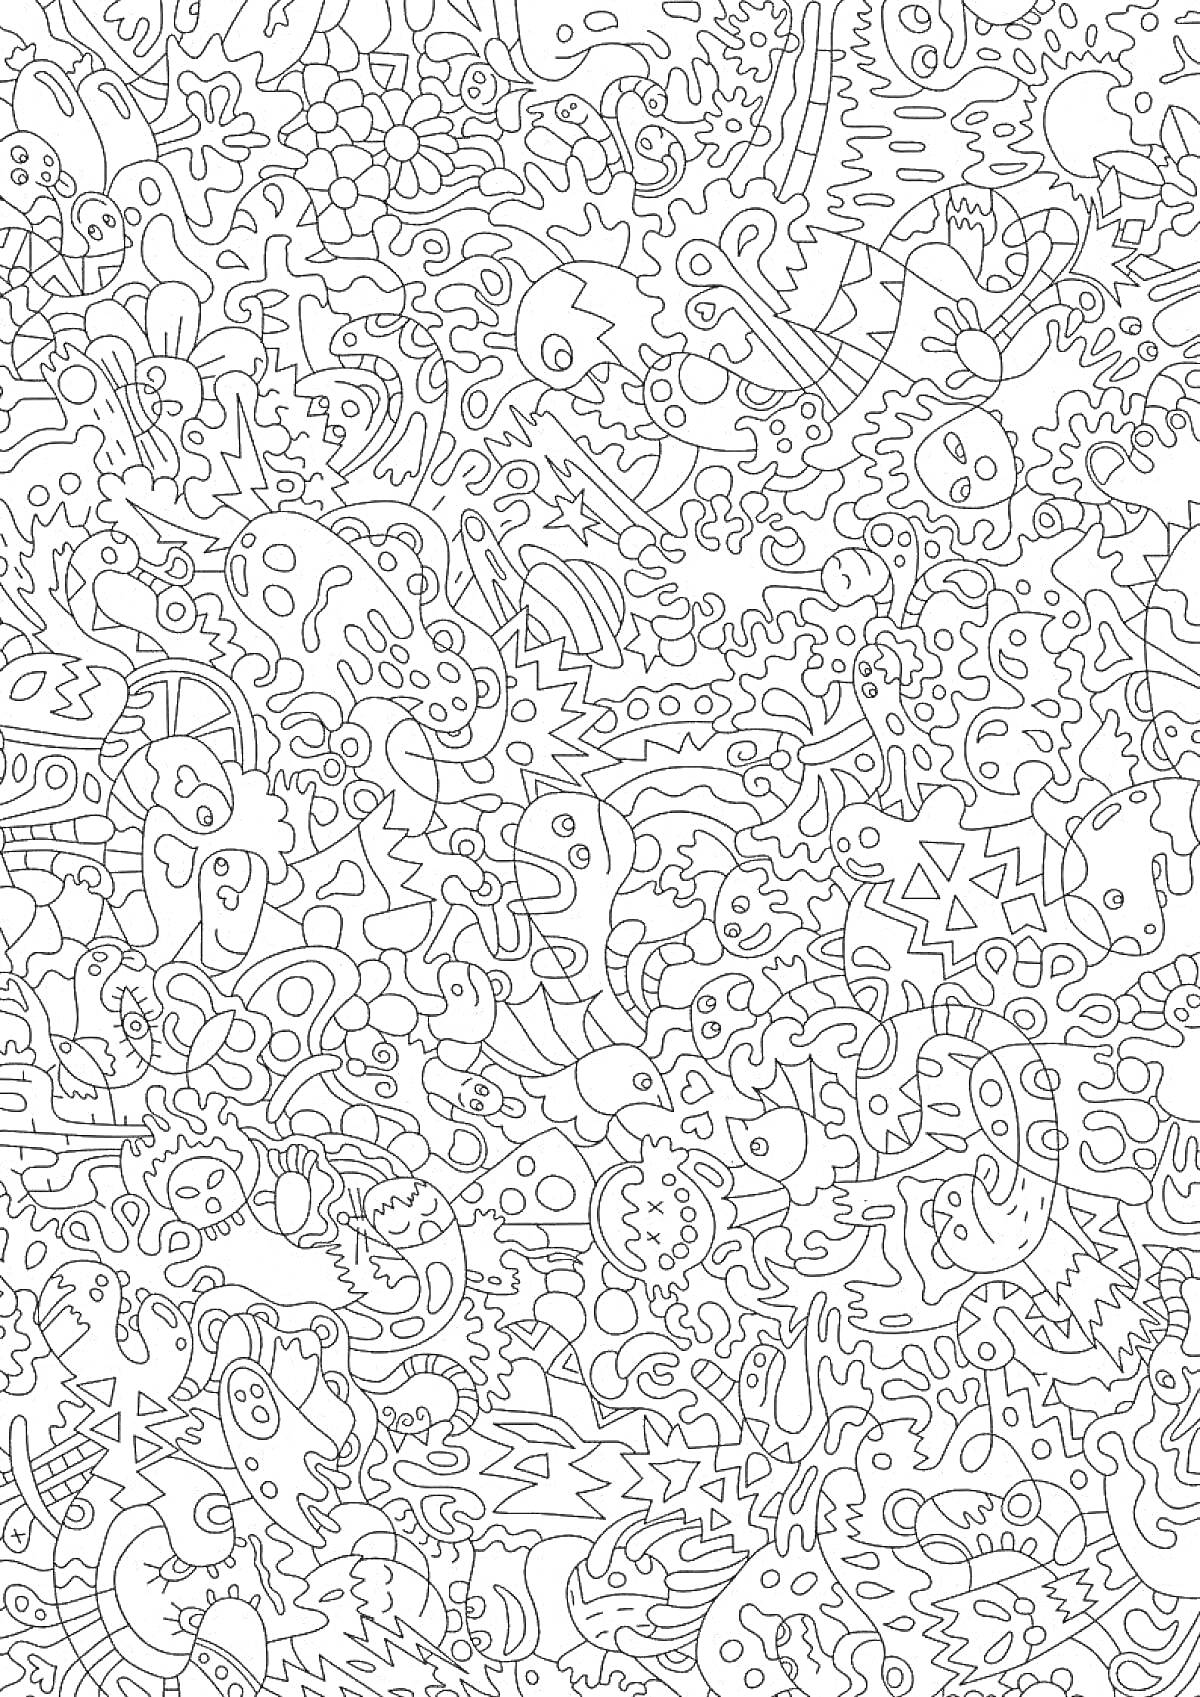 Раскраска Абстрактный рисунок с множеством мелких элементов, включая животных, рыб, растения, геометрические фигуры, звезды, сердца и причудливые формы.